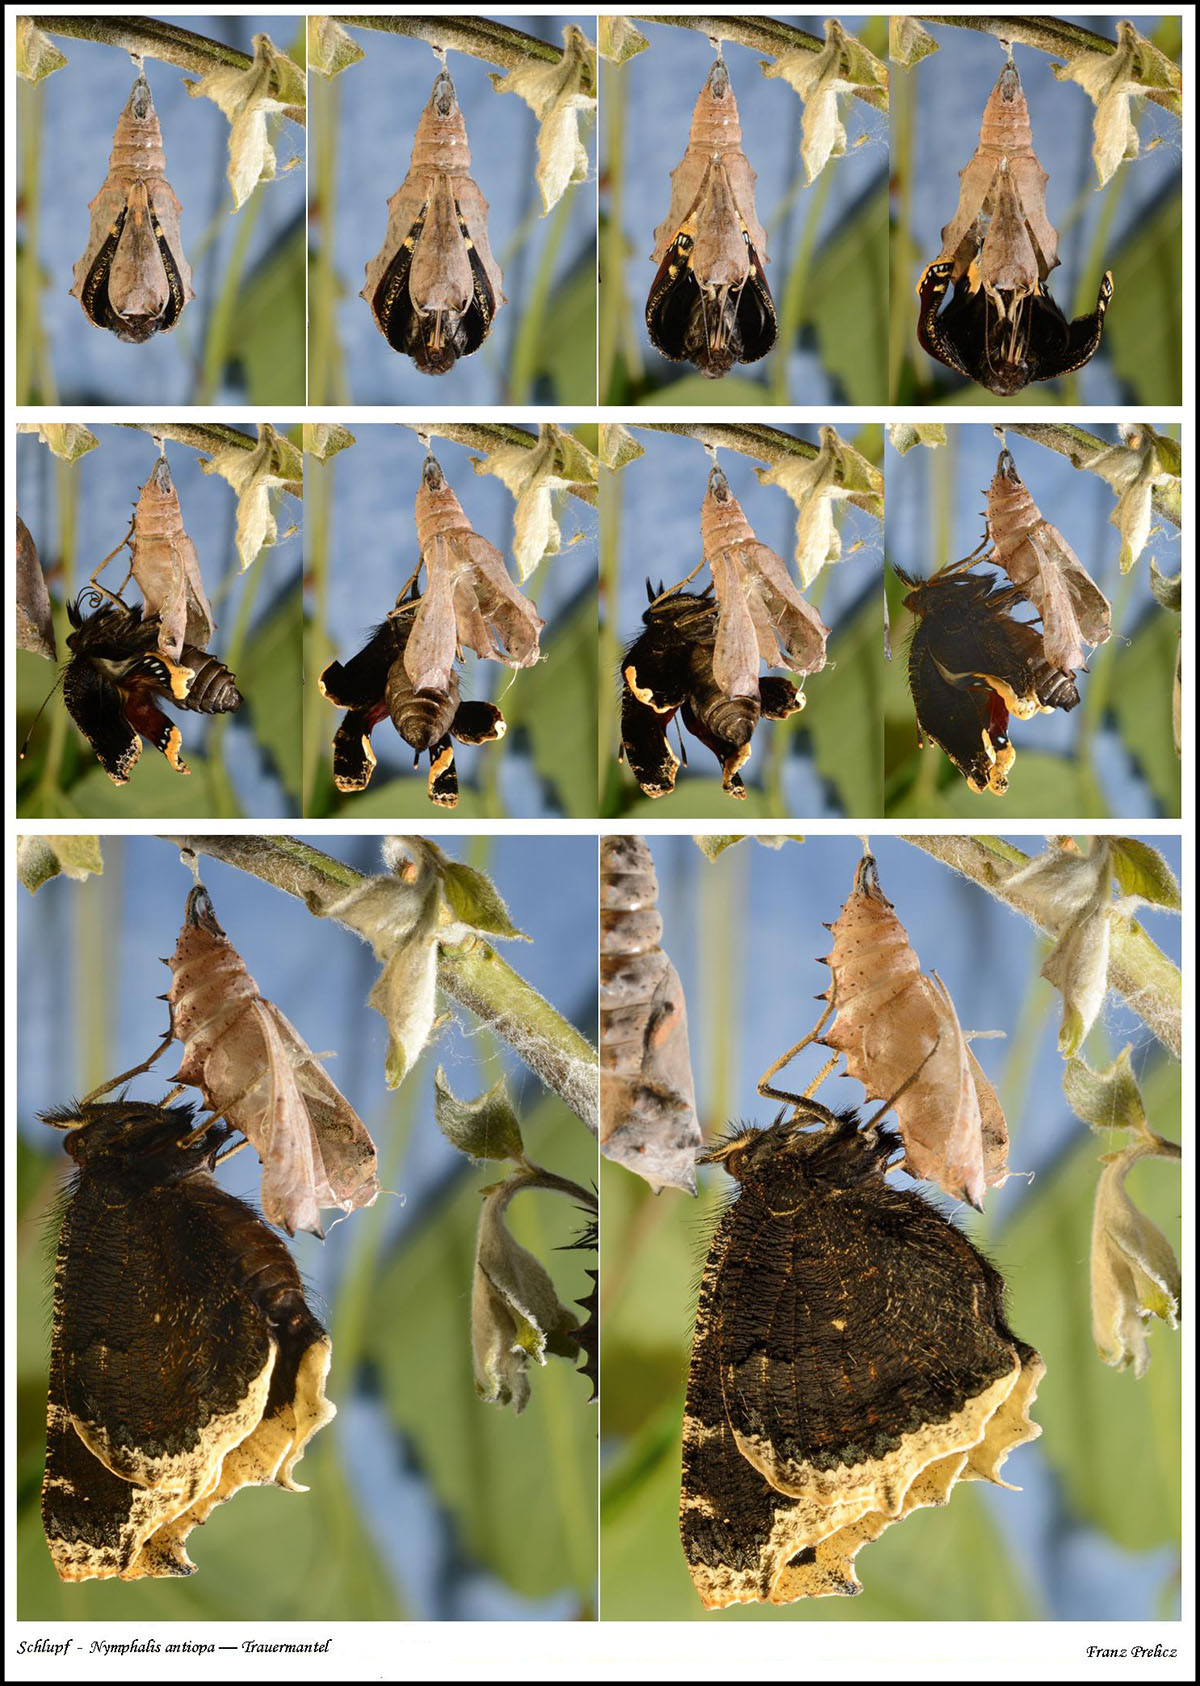 /PicturesNA/Photos/Butterflies/Prelicz/antiopa_falter_sequenz_prelicz_001_large.jpg